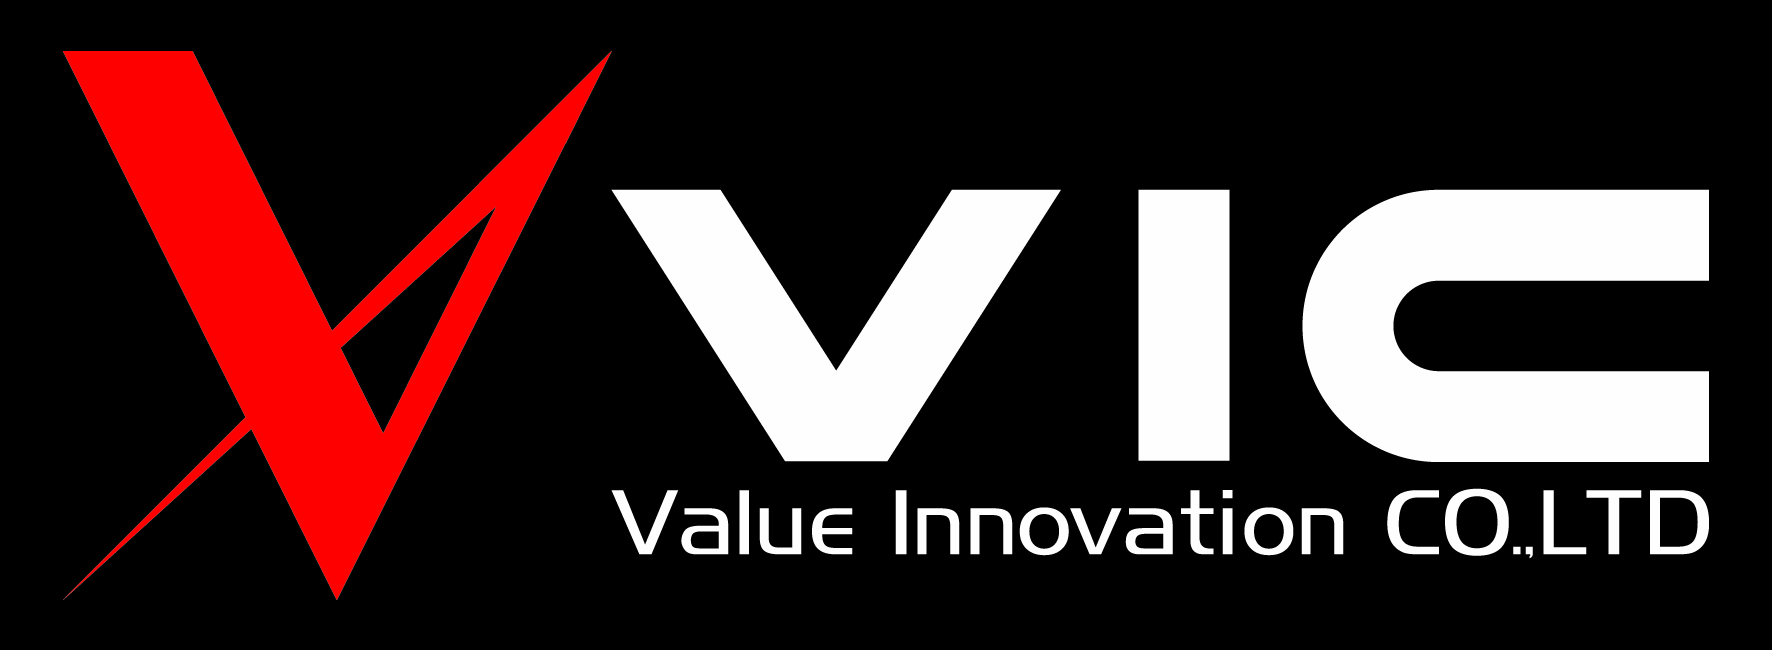 บริษัทValue Innovation CO.,LTD.